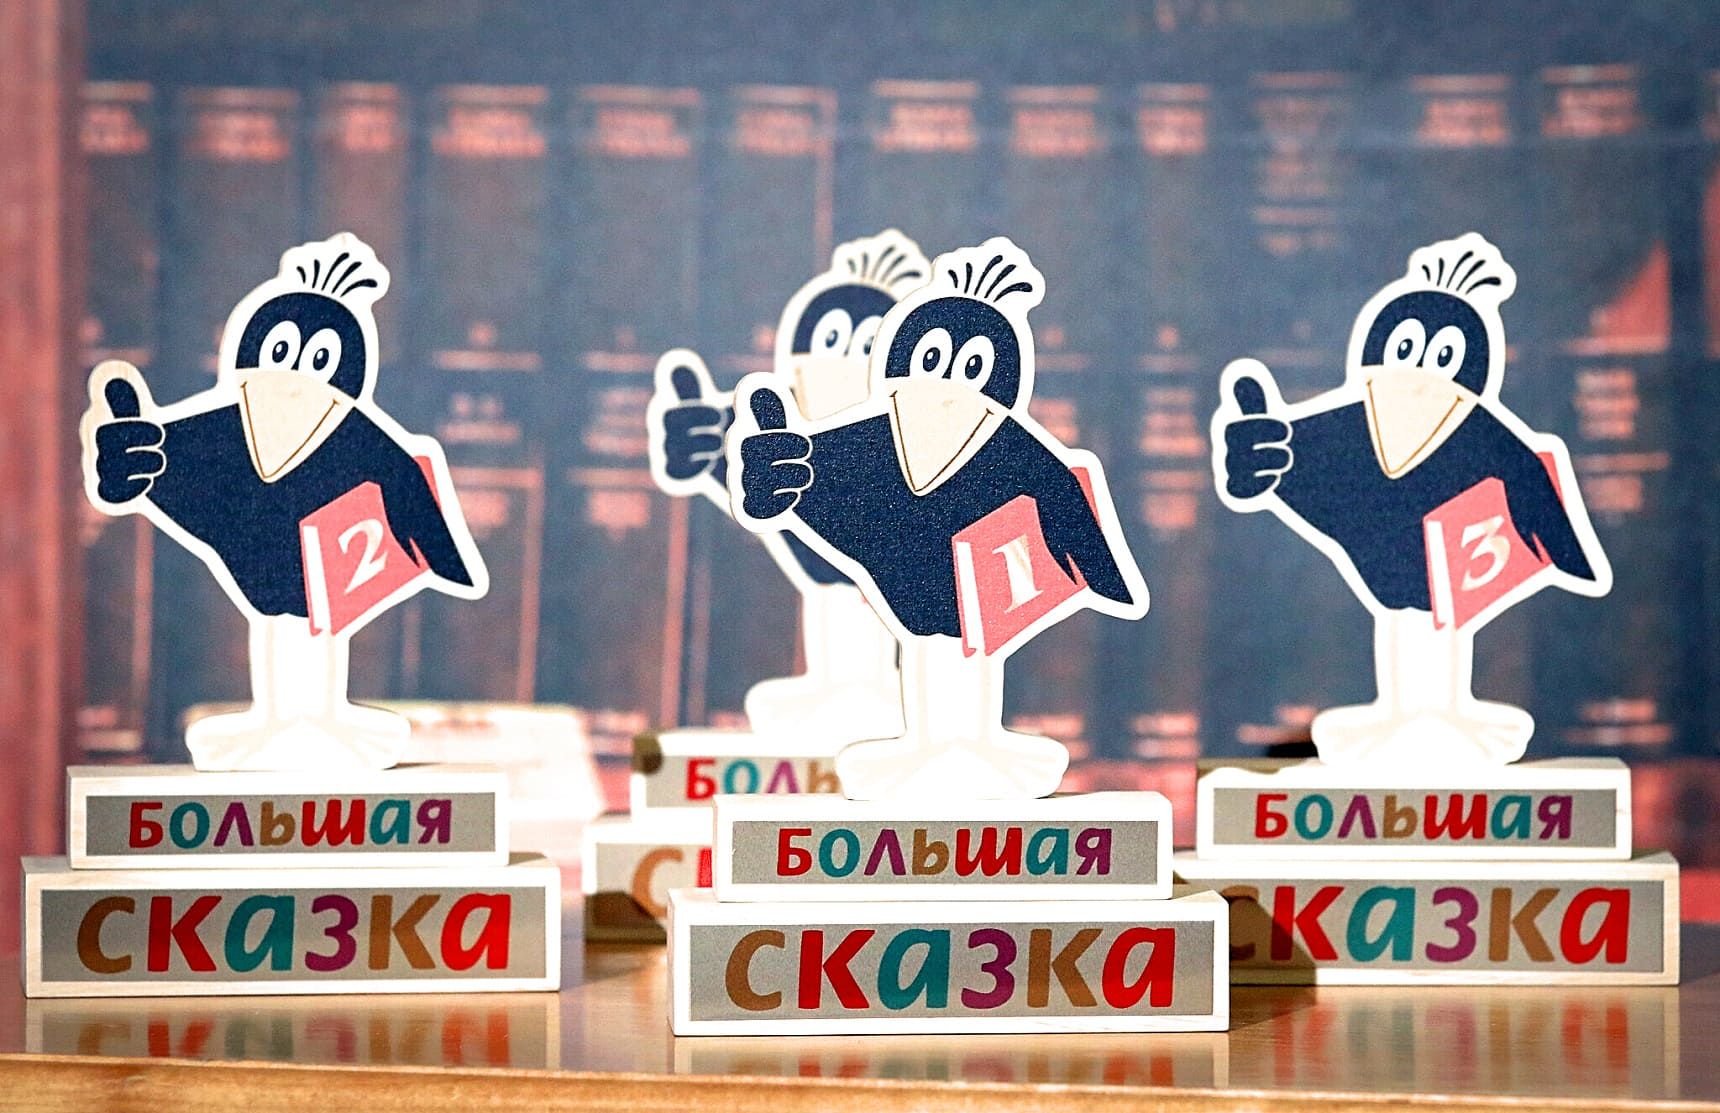 Официальный логотип премии – галчонок Хватайка,  разработанный дизайнером из Ханты-Мансийска Анастасией Жуковой / Фото: РГДБ